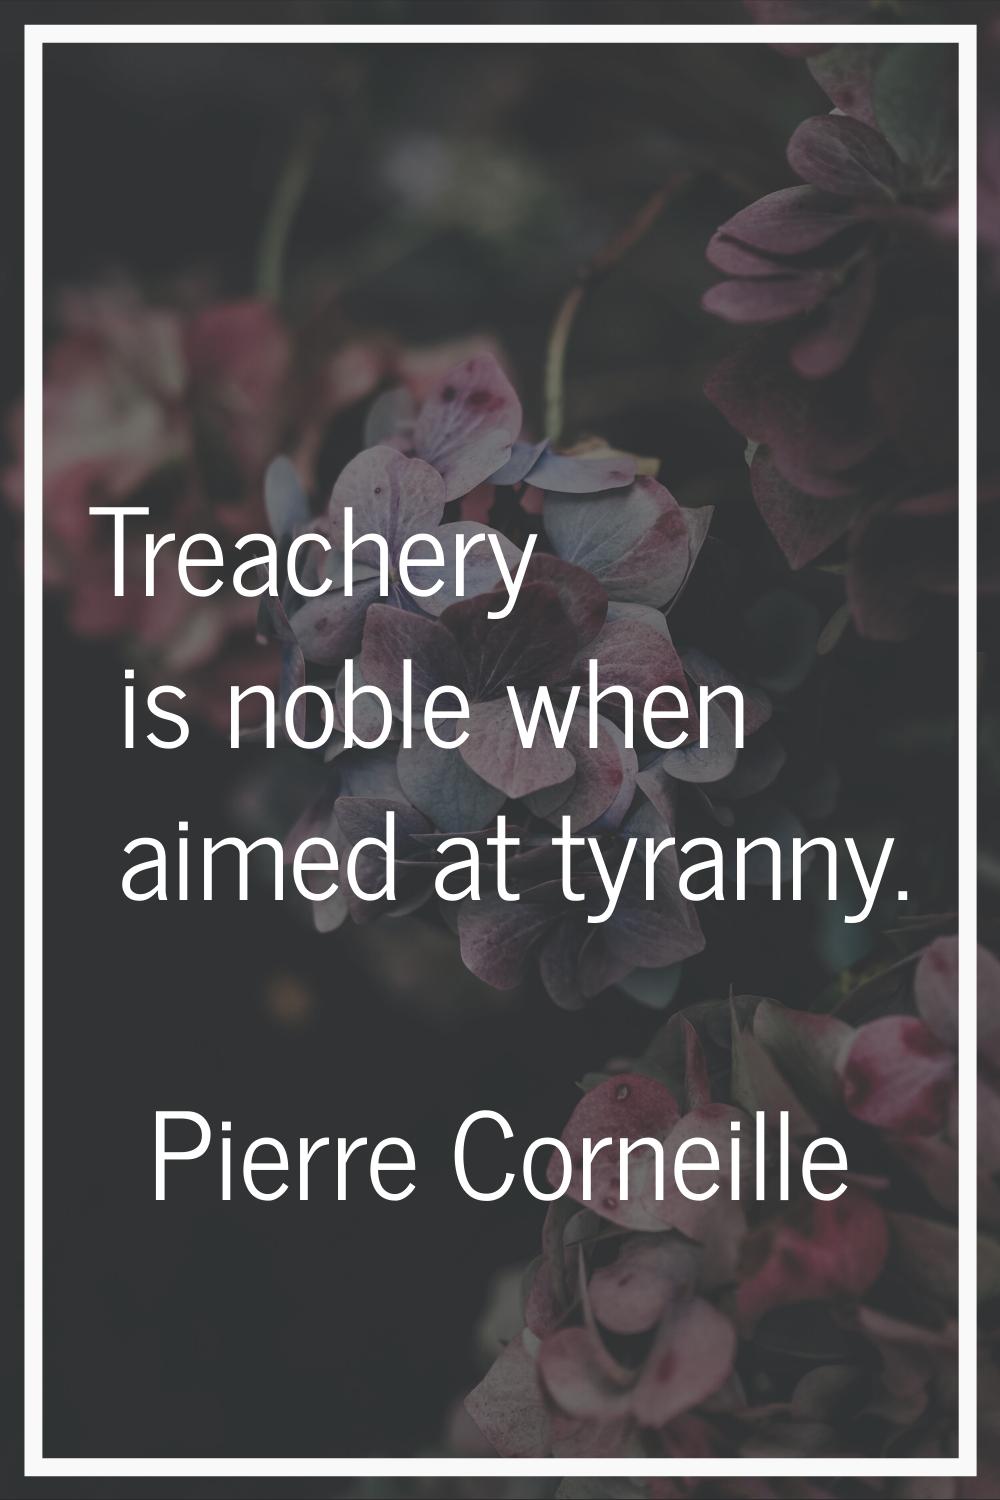 Treachery is noble when aimed at tyranny.